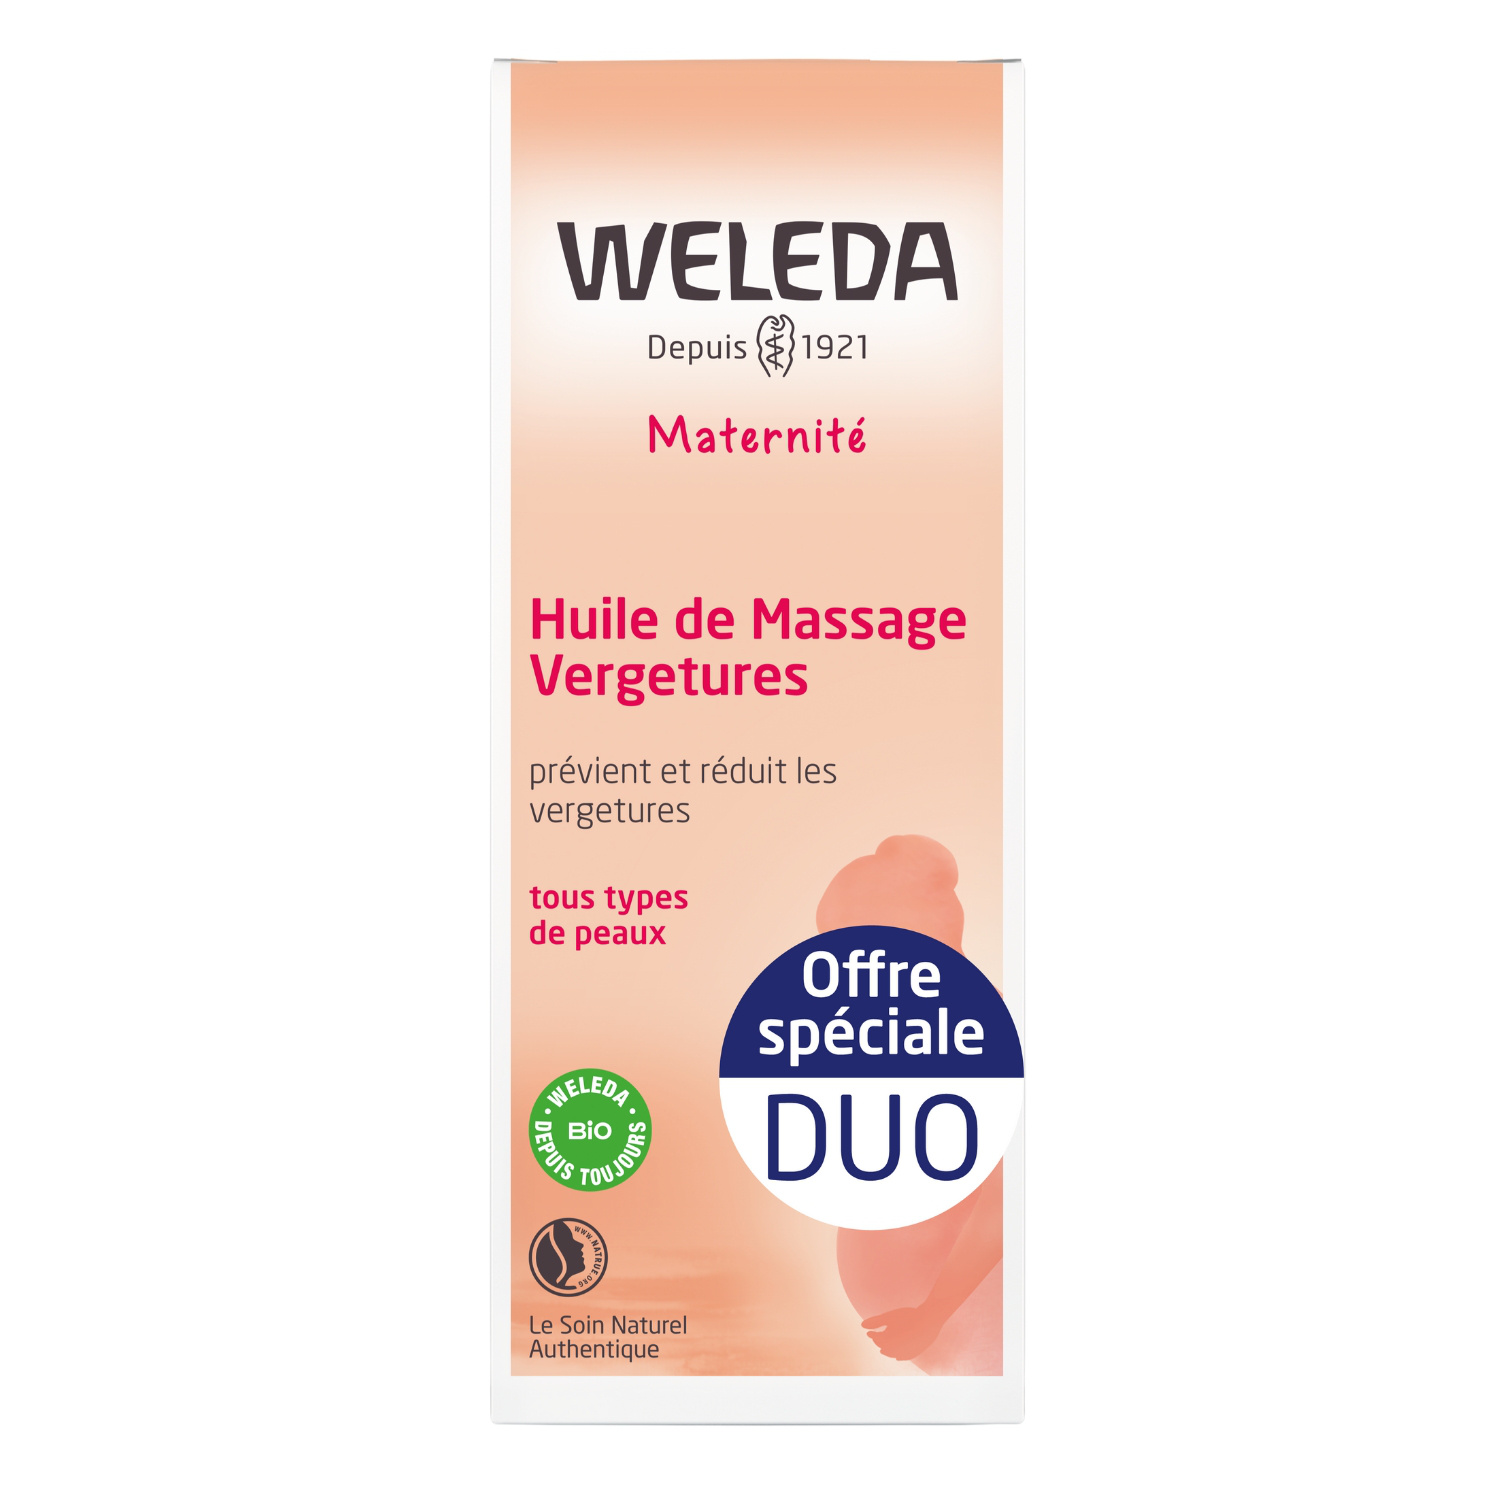 Huile de massage anti-vergetures Weleda